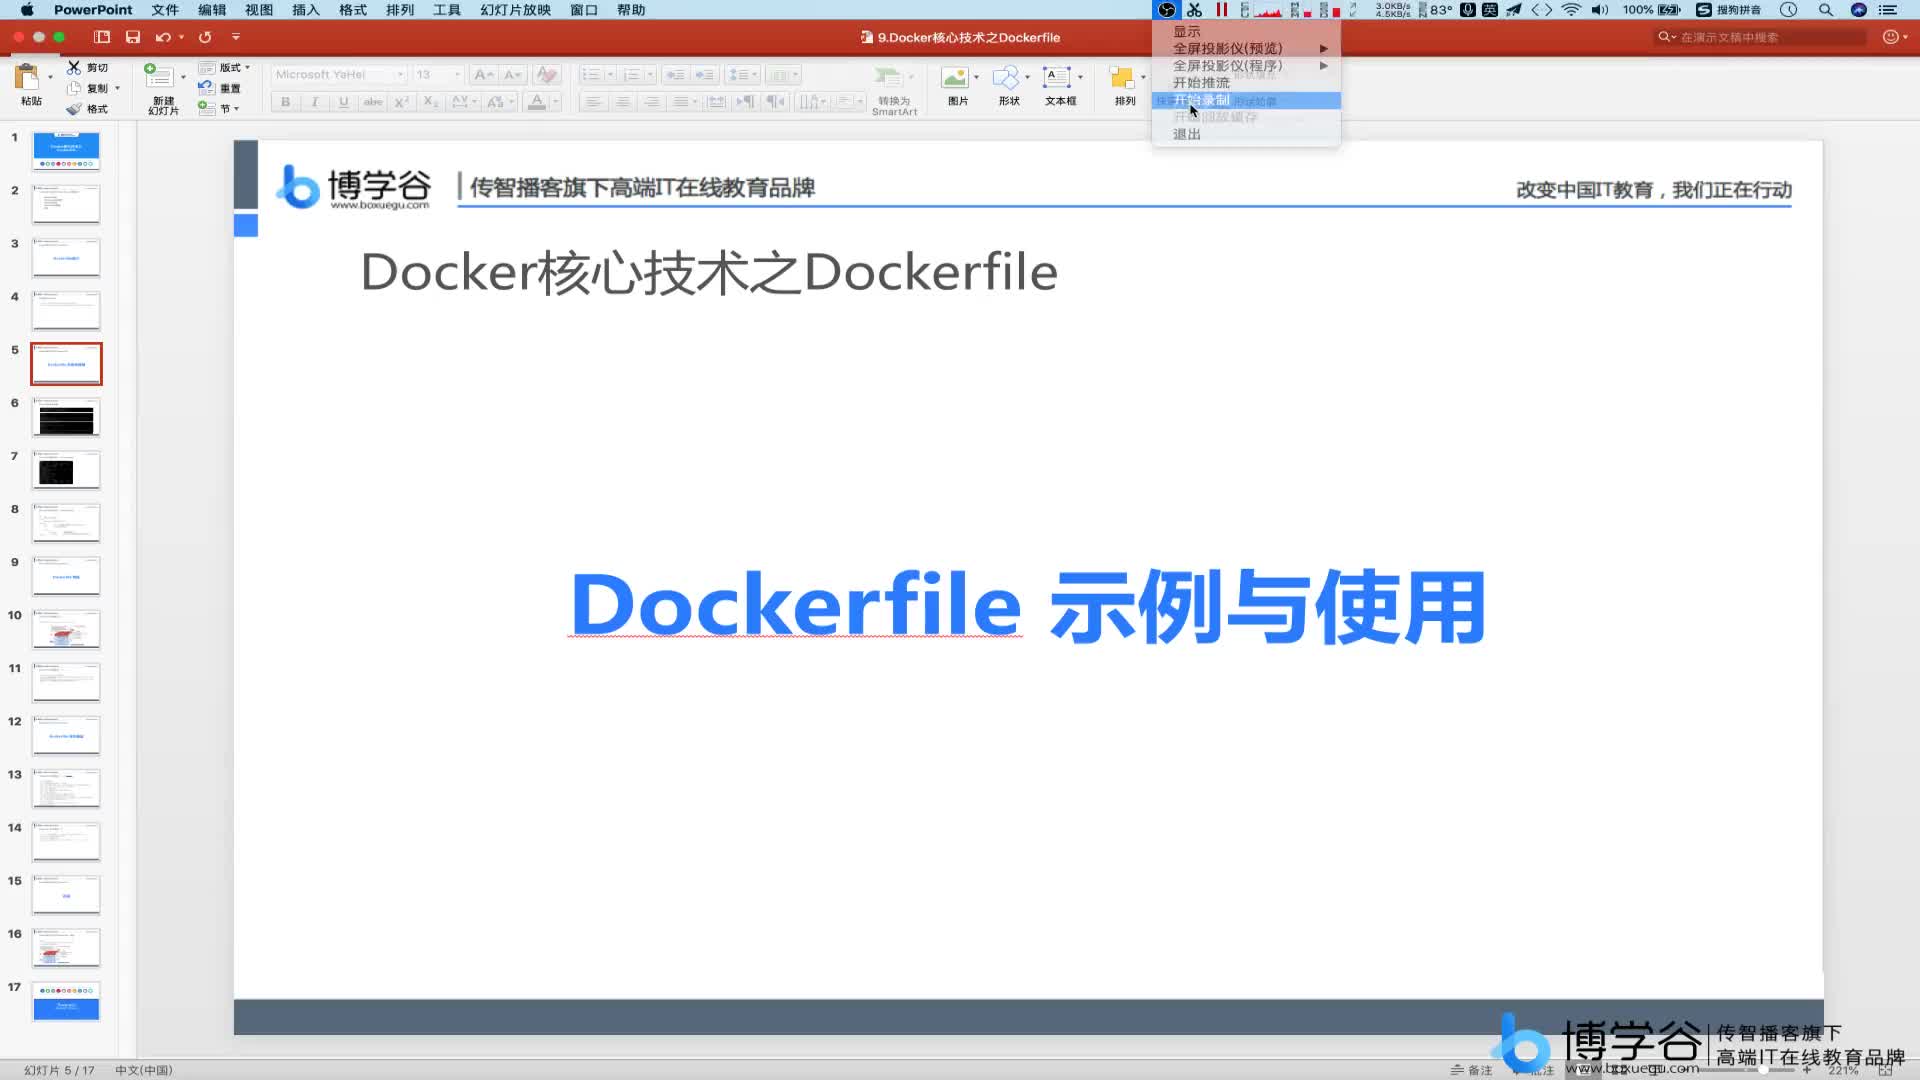 3.Dockerfile的撰写示范